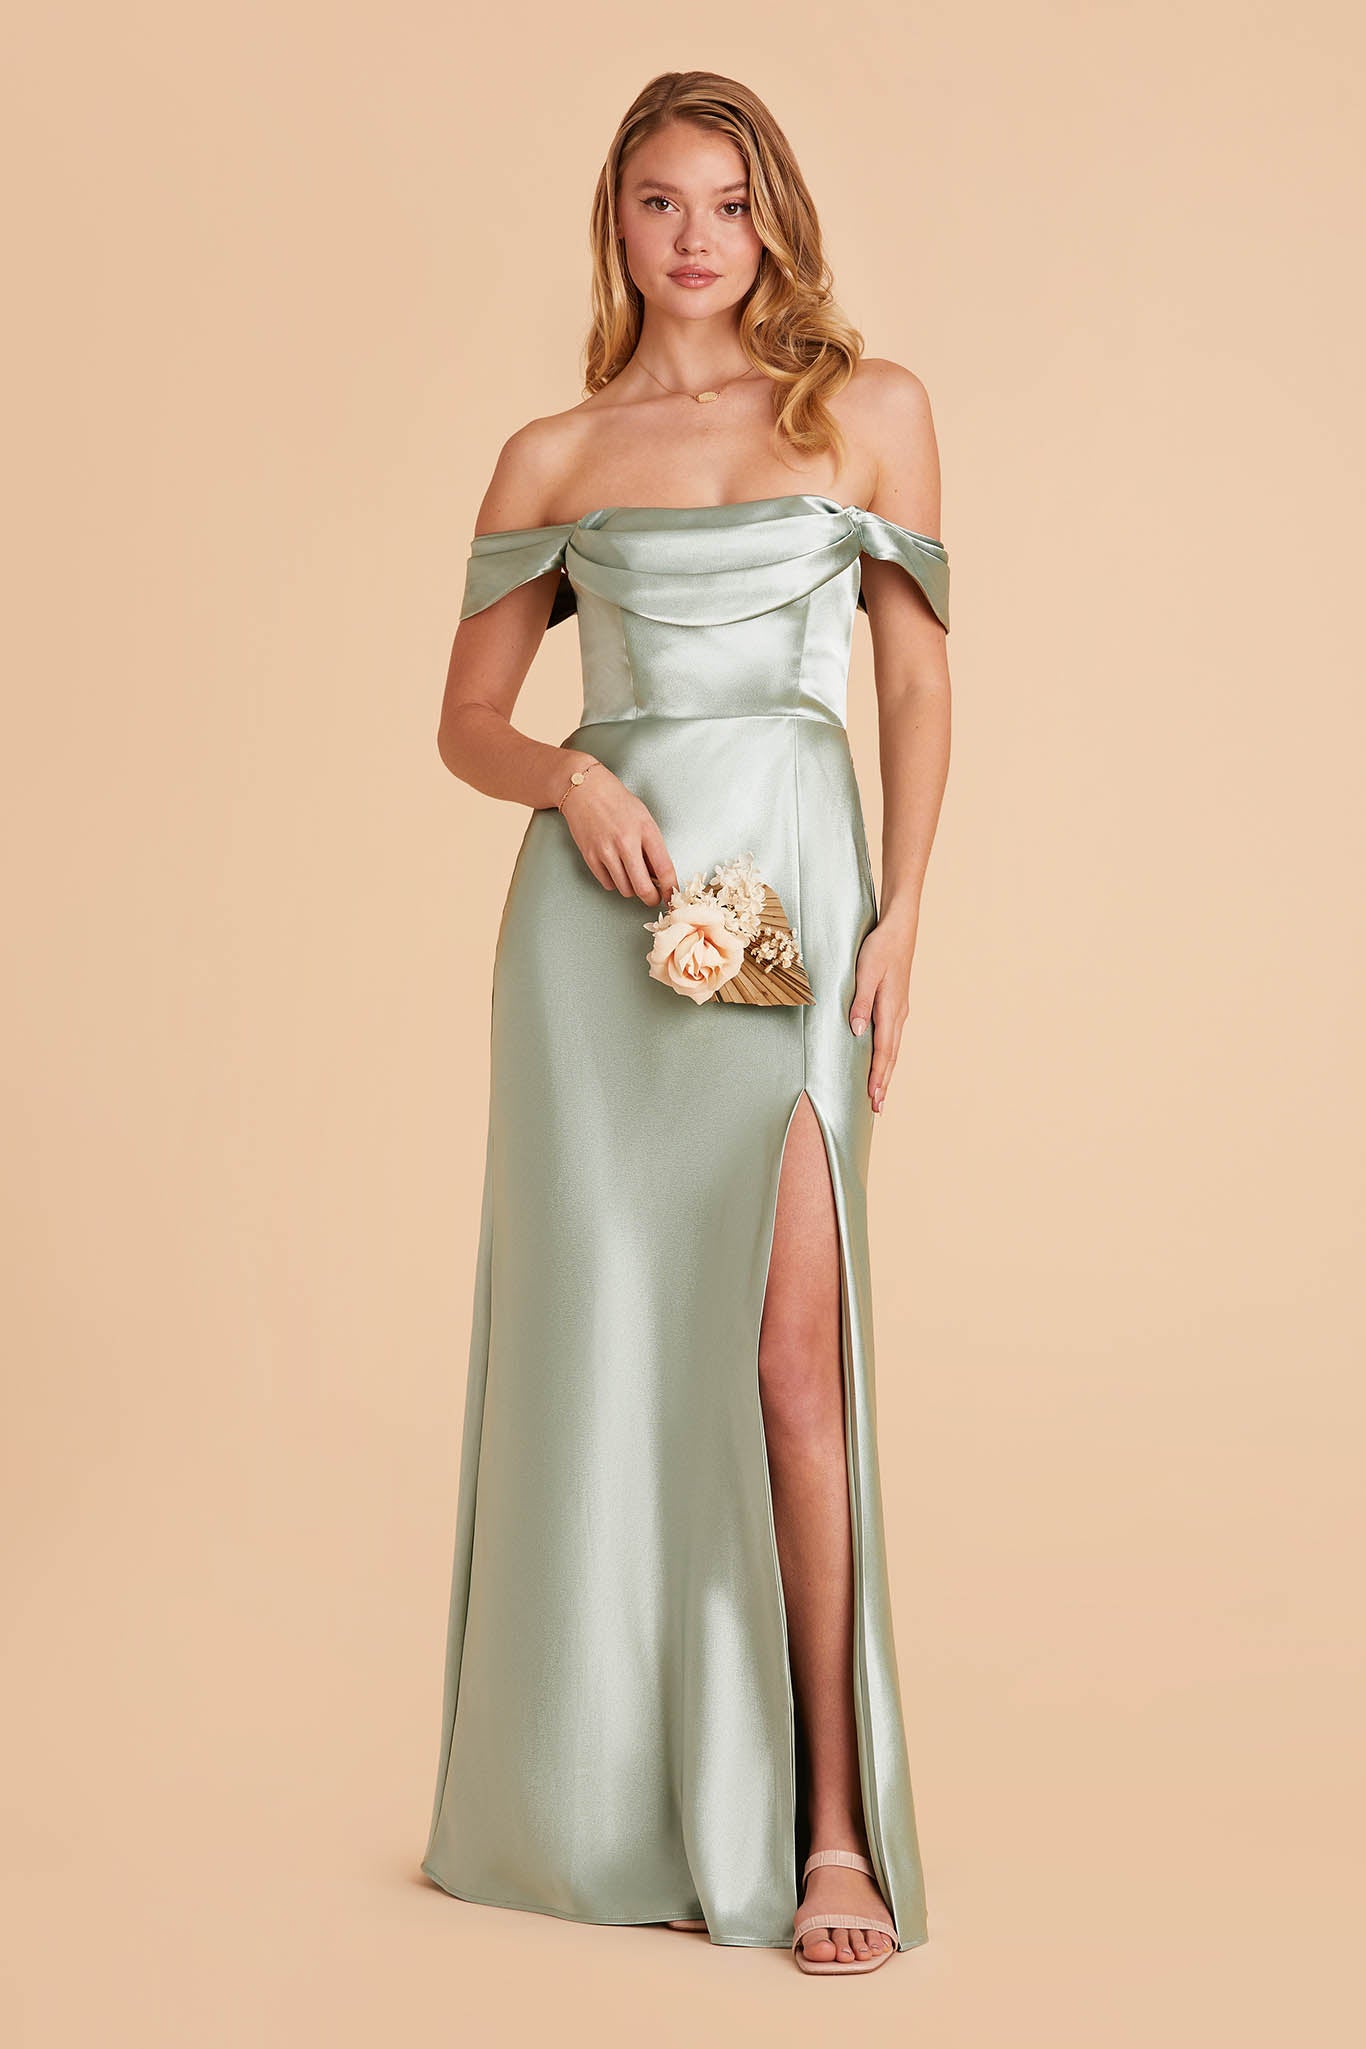 Bridesmaid Dresses Starting at $99